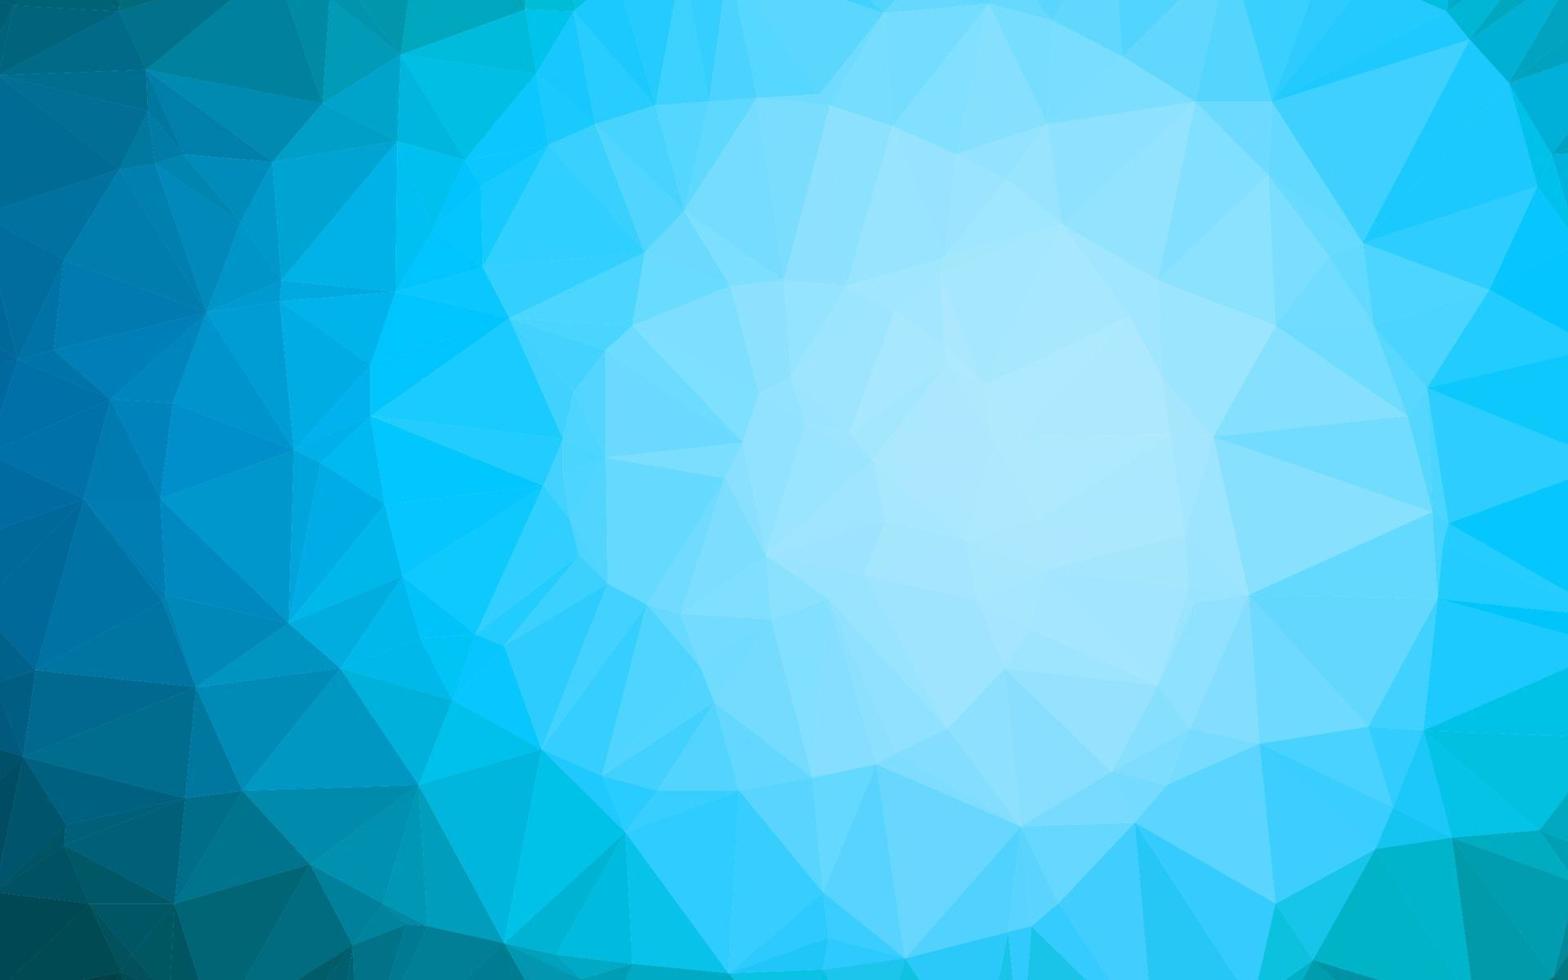 struttura poligonale astratta di vettore blu chiaro.